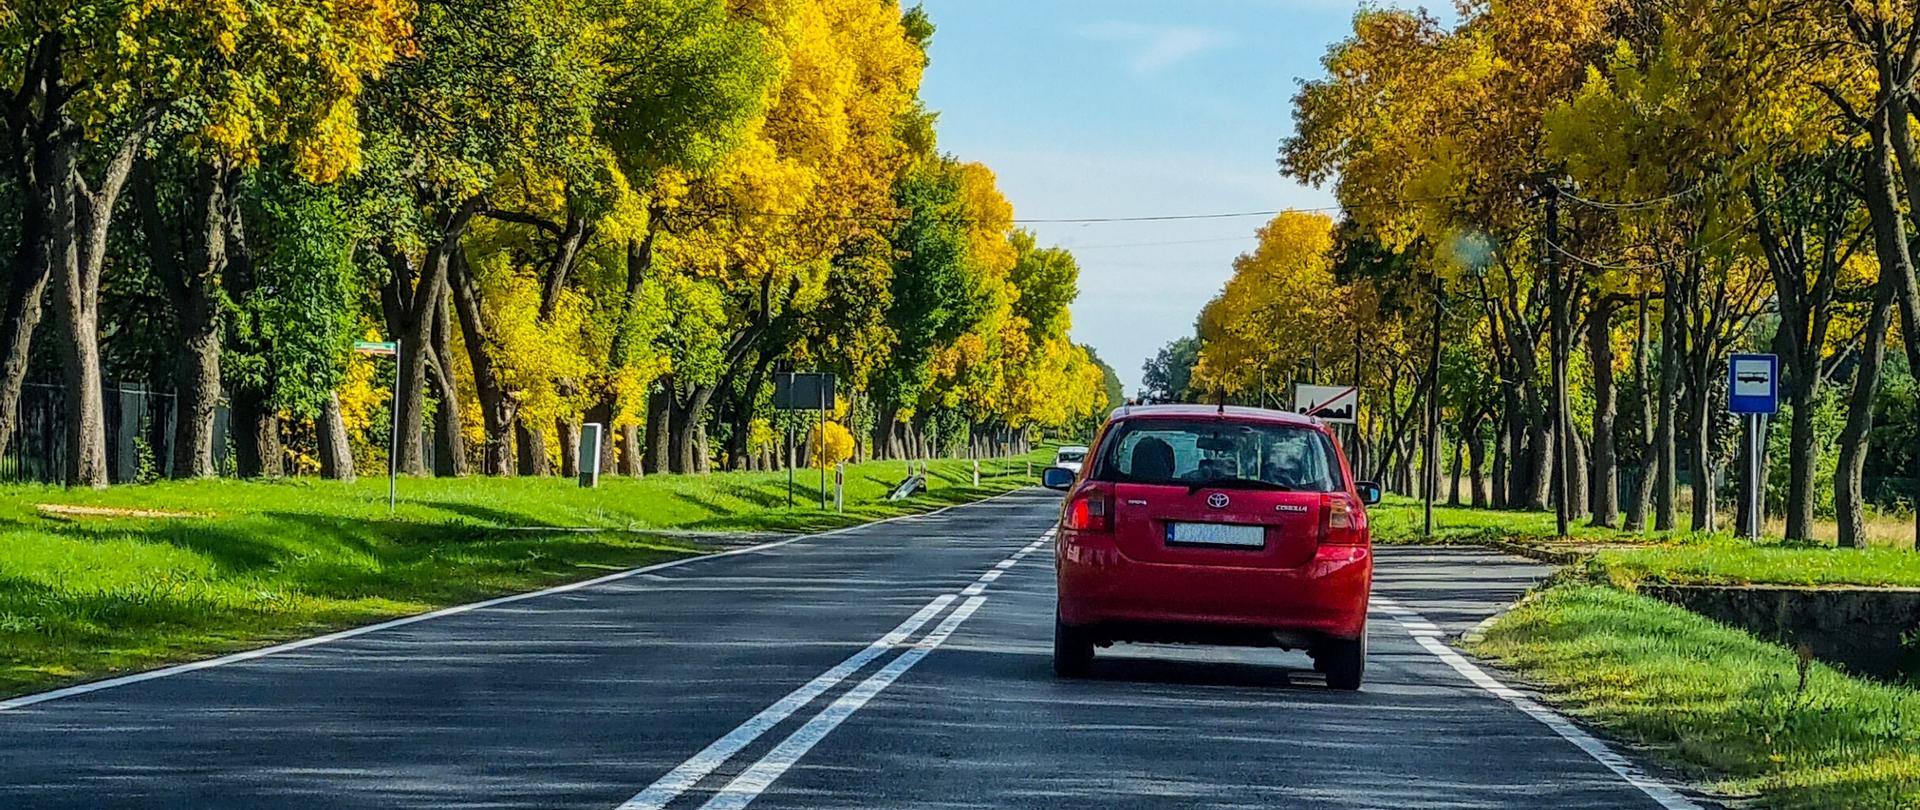 Droga jednojezdniowa w otoczeniu drzew w jesiennym słonecznym klimacie. Na drodze czerwony samochód osobowy.